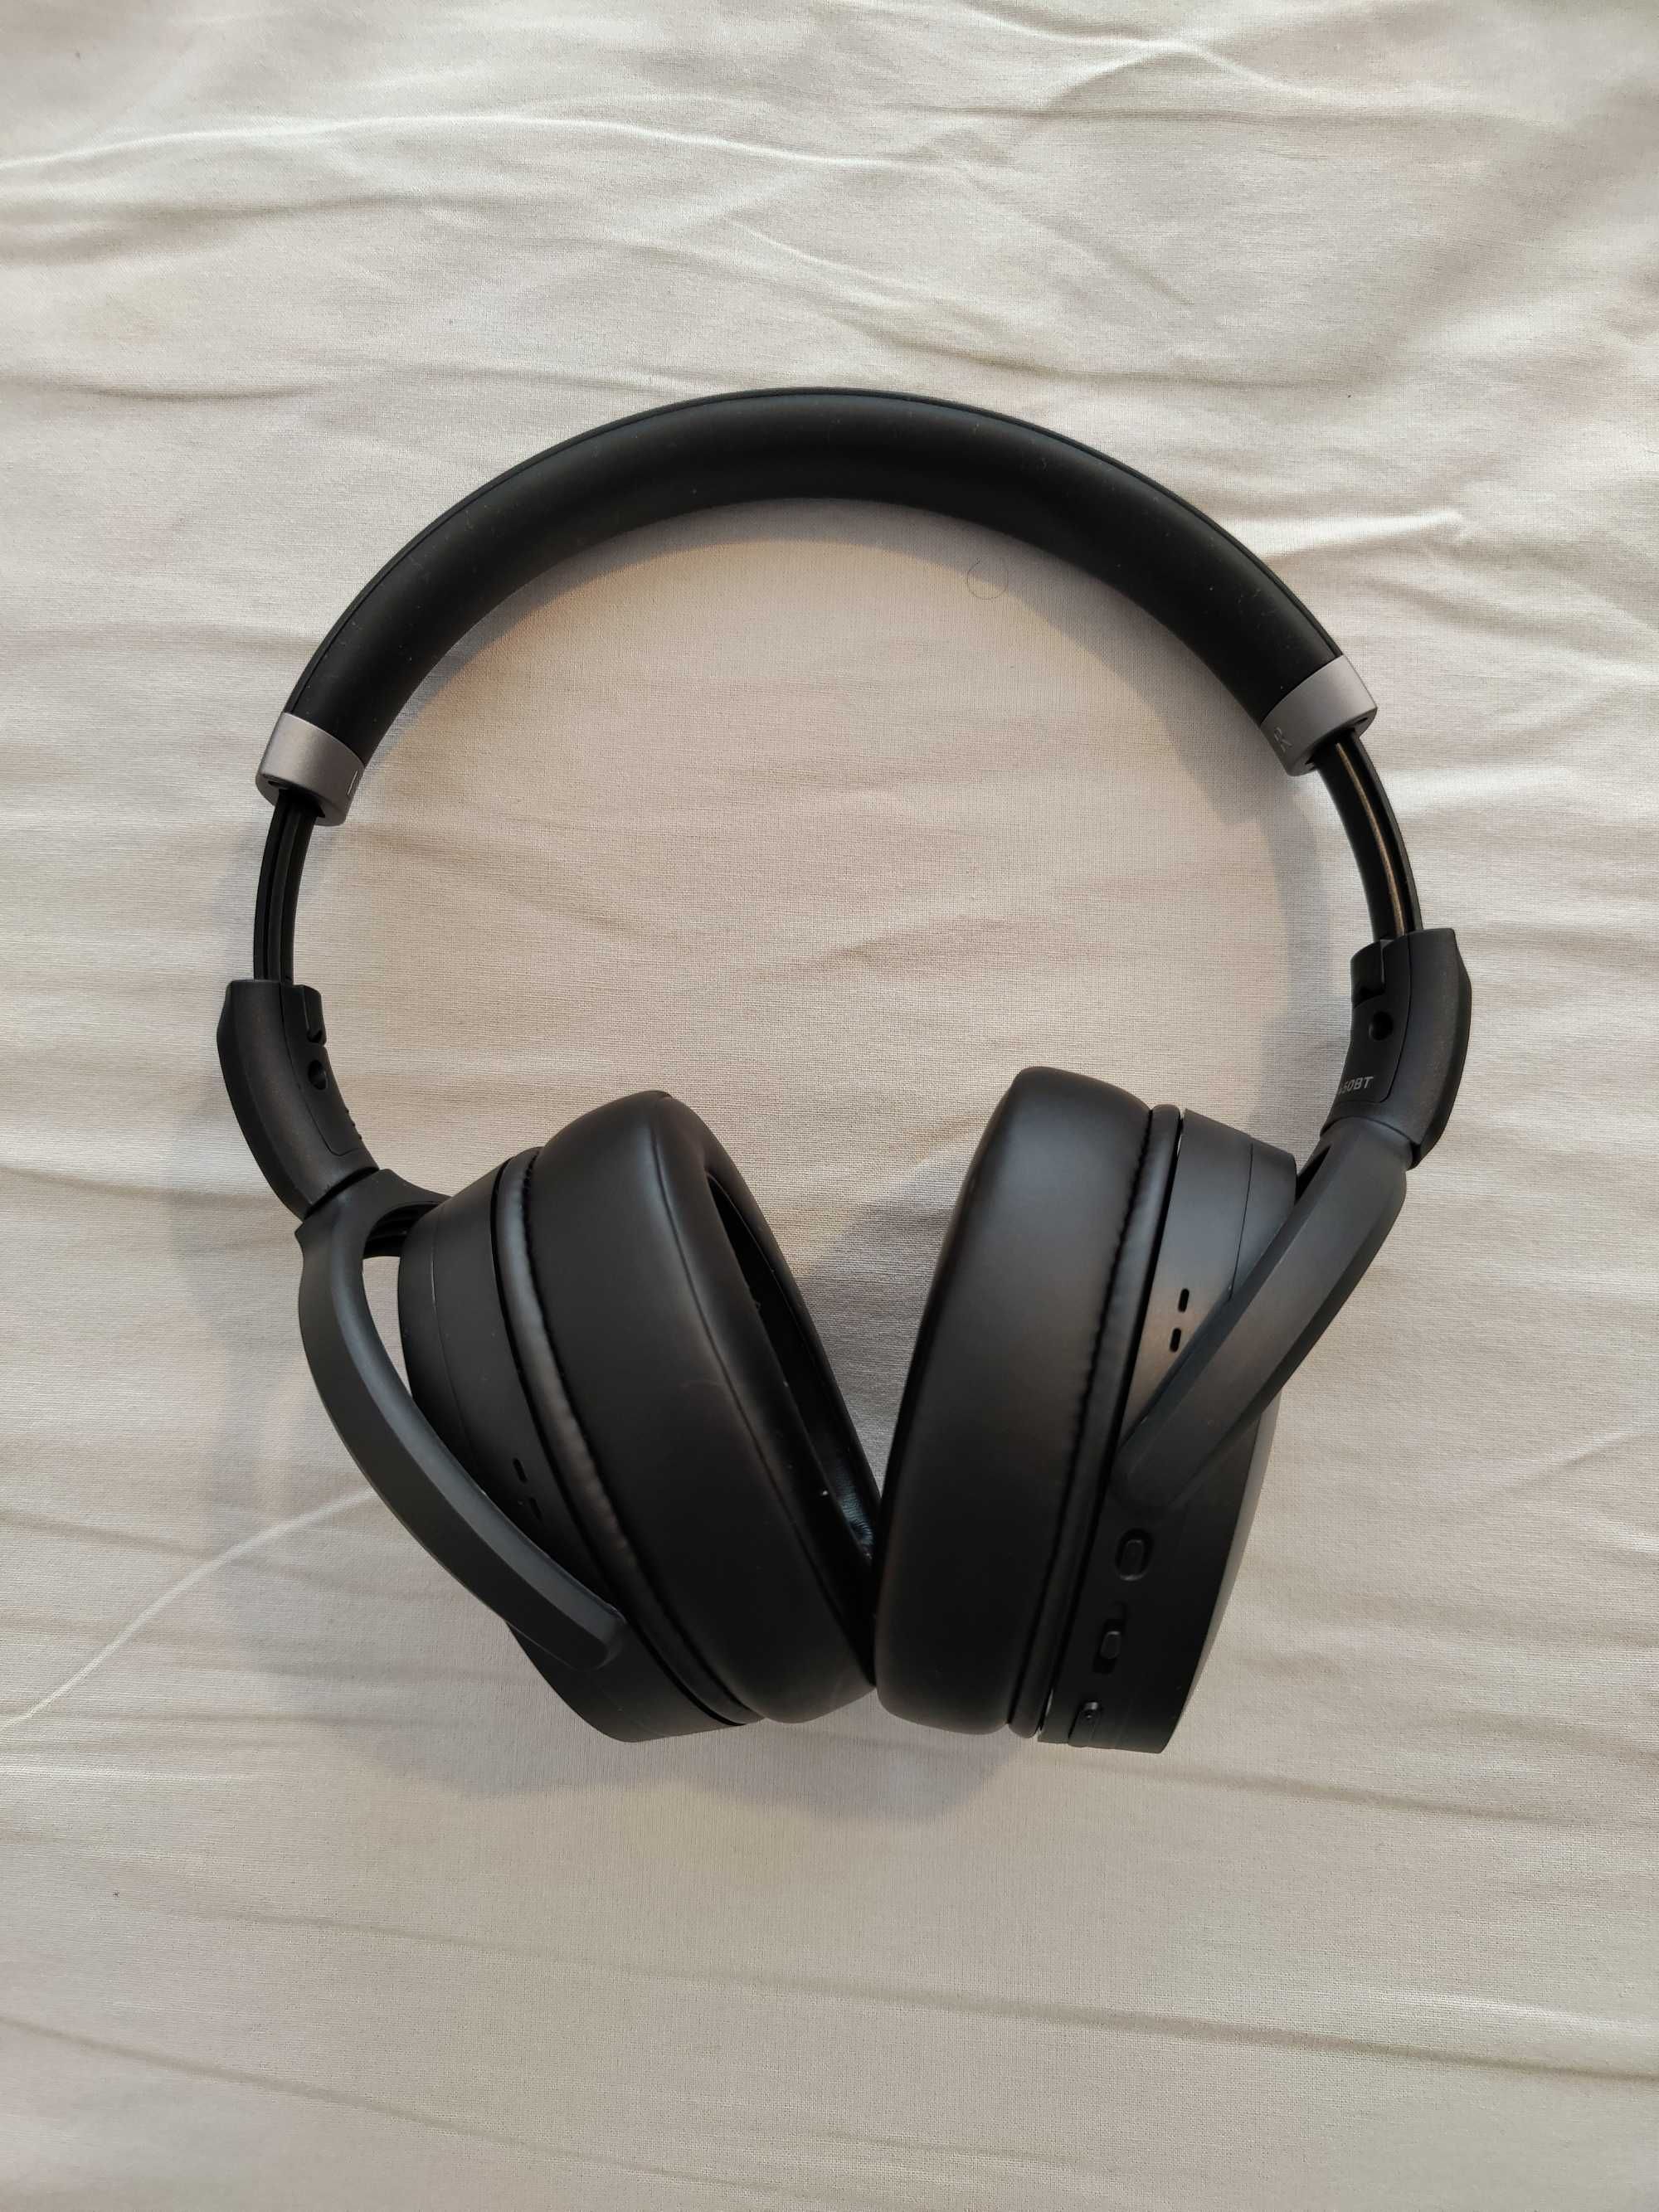 Sennheiser HD 450 BT - Headphones / Auscultadores Sem Fios